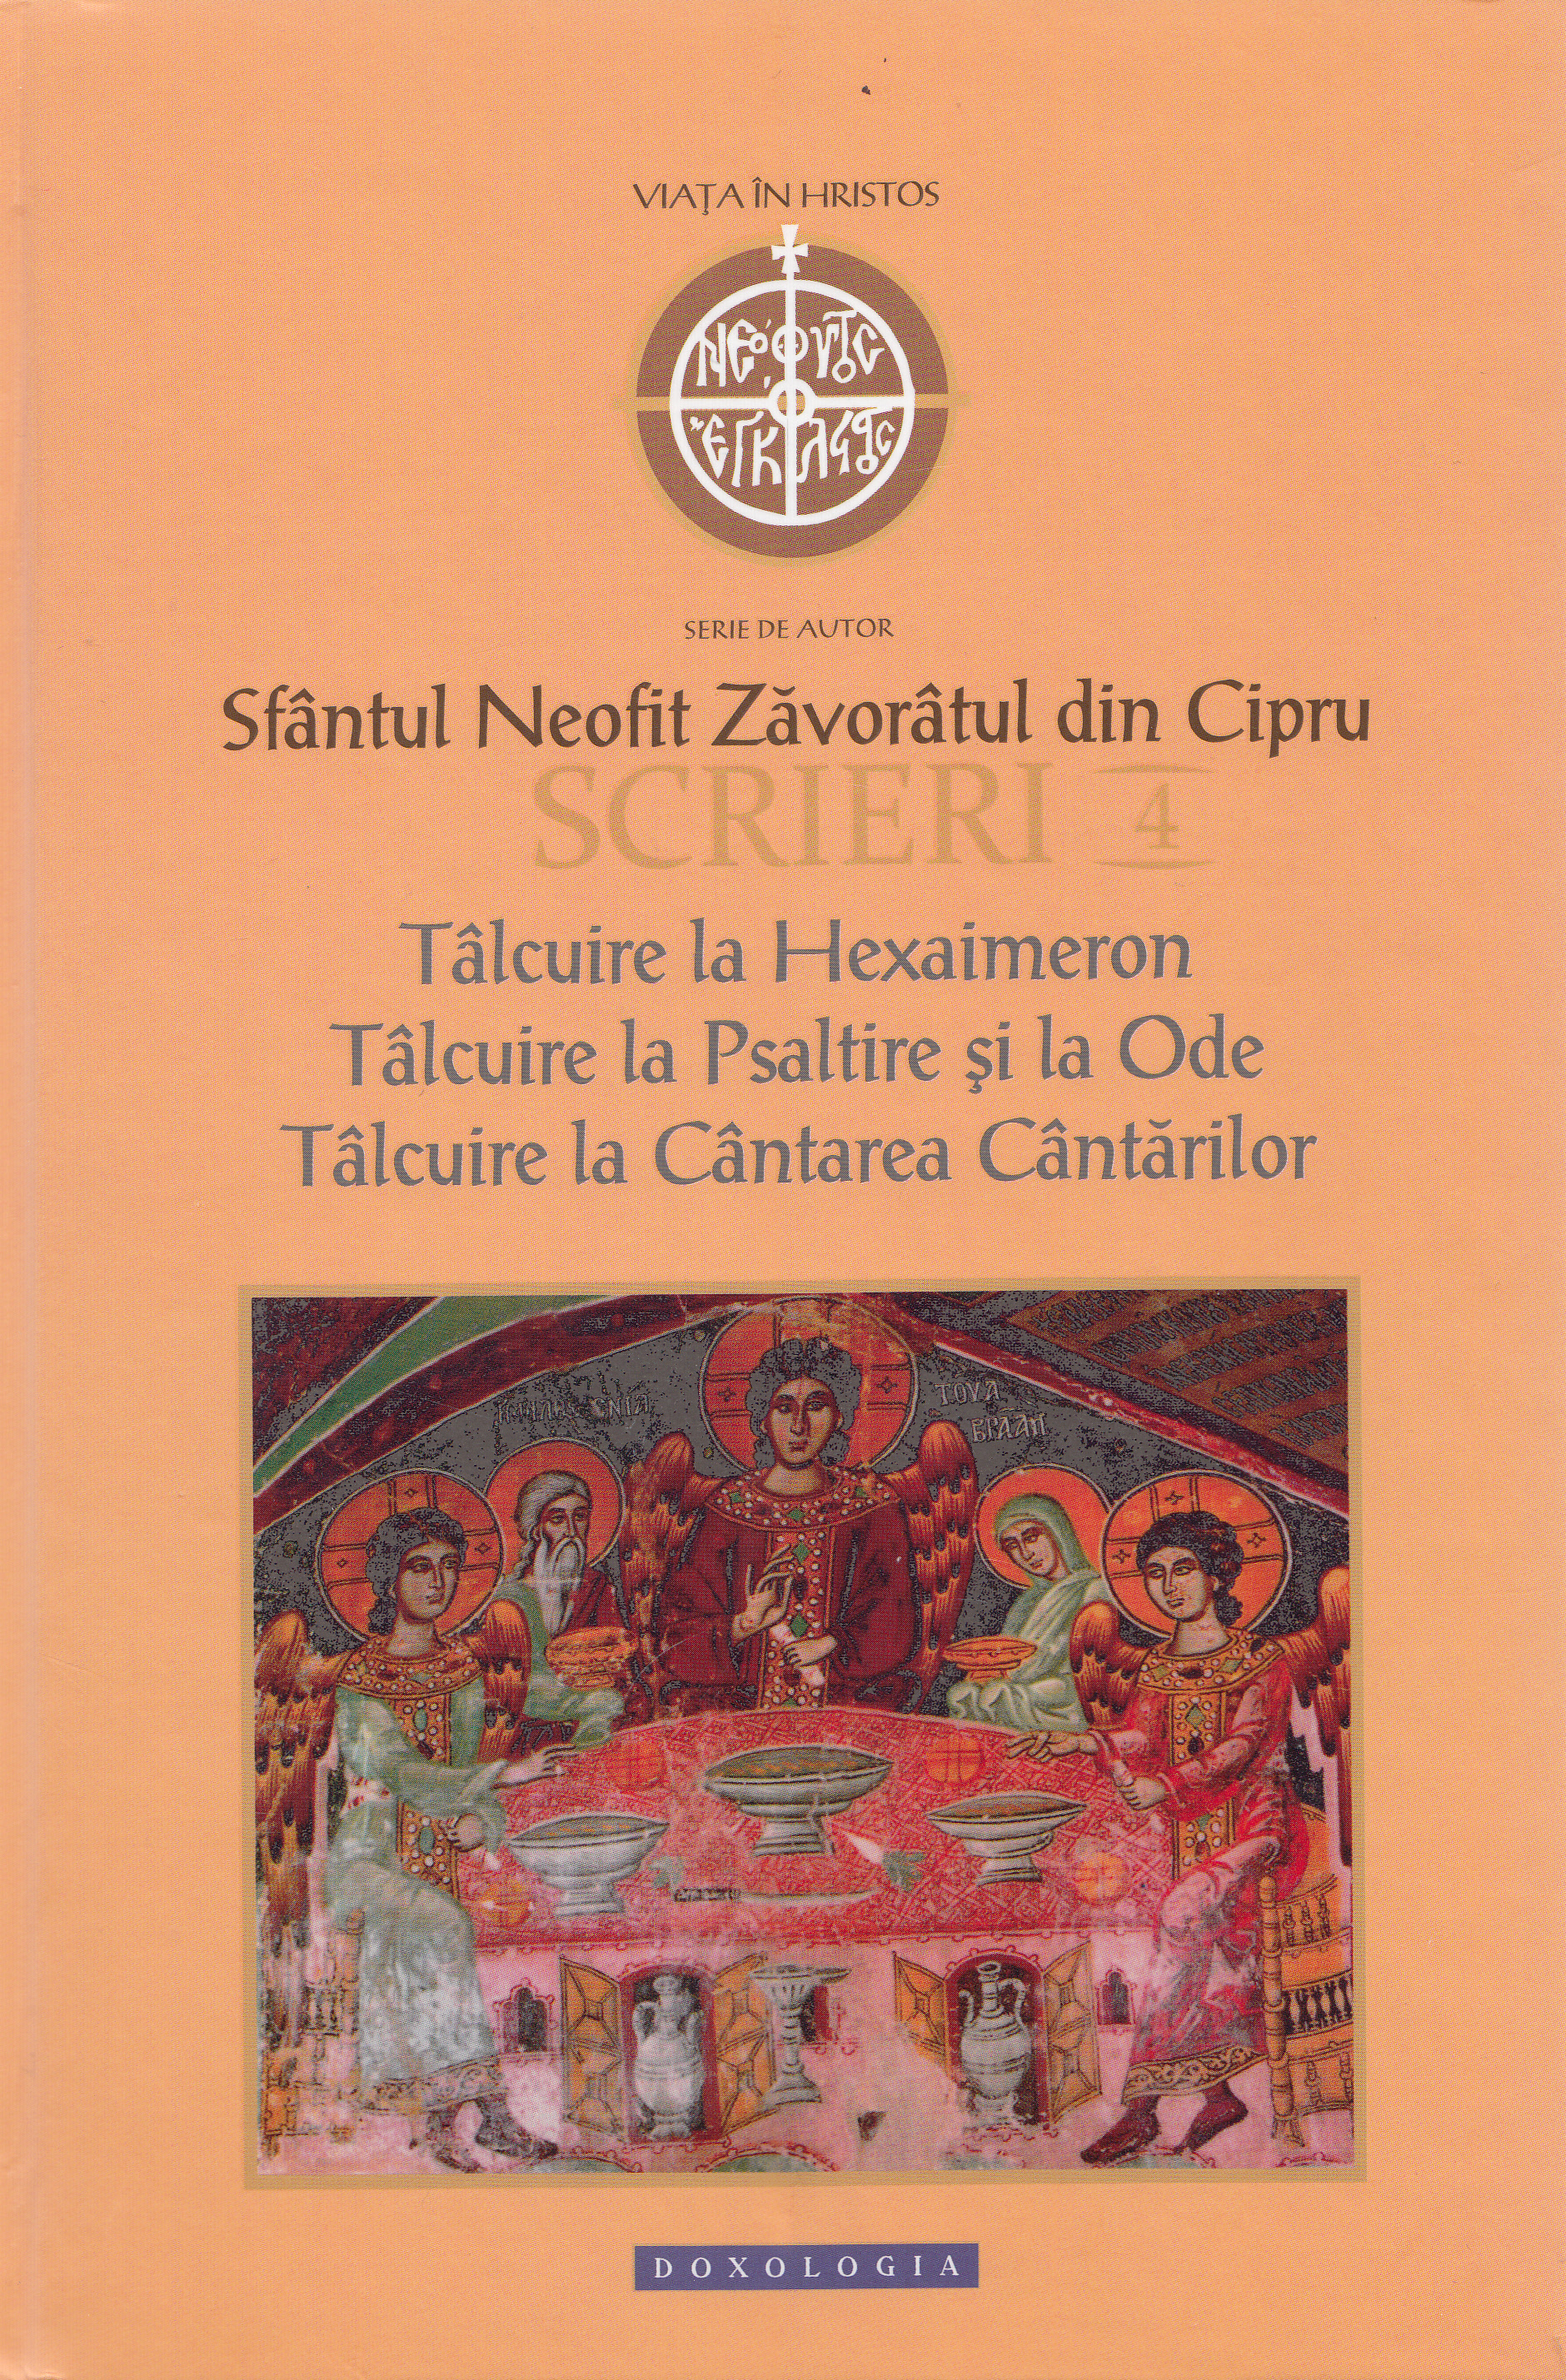 Scrieri 4: Talcuire la Hexaimeron - Sfantul Neofit Zavoratul din Cipru